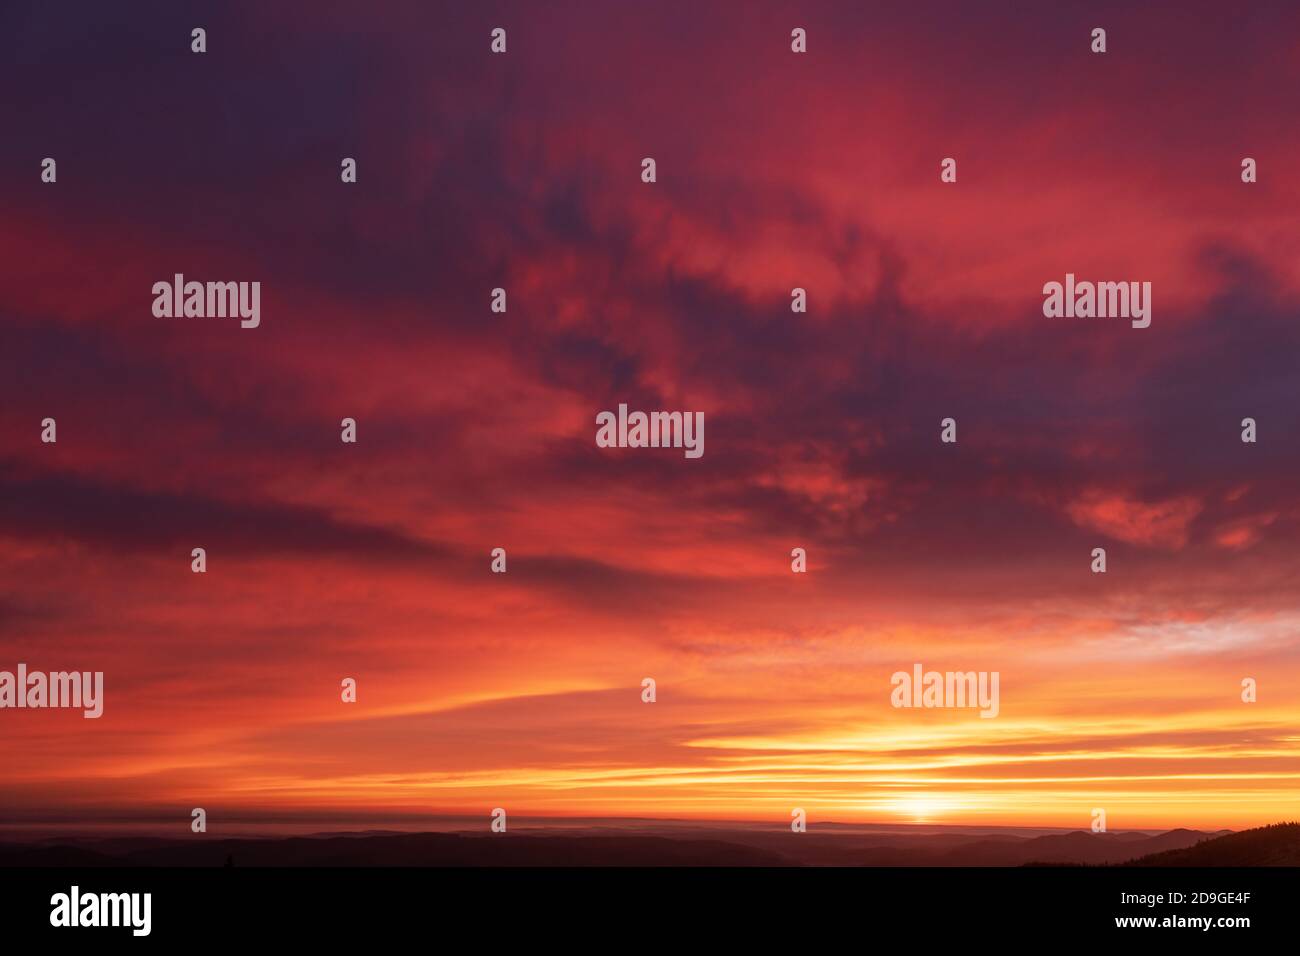 Feurig orange Sonnenuntergang Himmel. Dramatischer Himmel mit rot leuchtenden Wolken. Natürlicher Hintergrund für Ihr Landschaftsprojekt Stockfoto